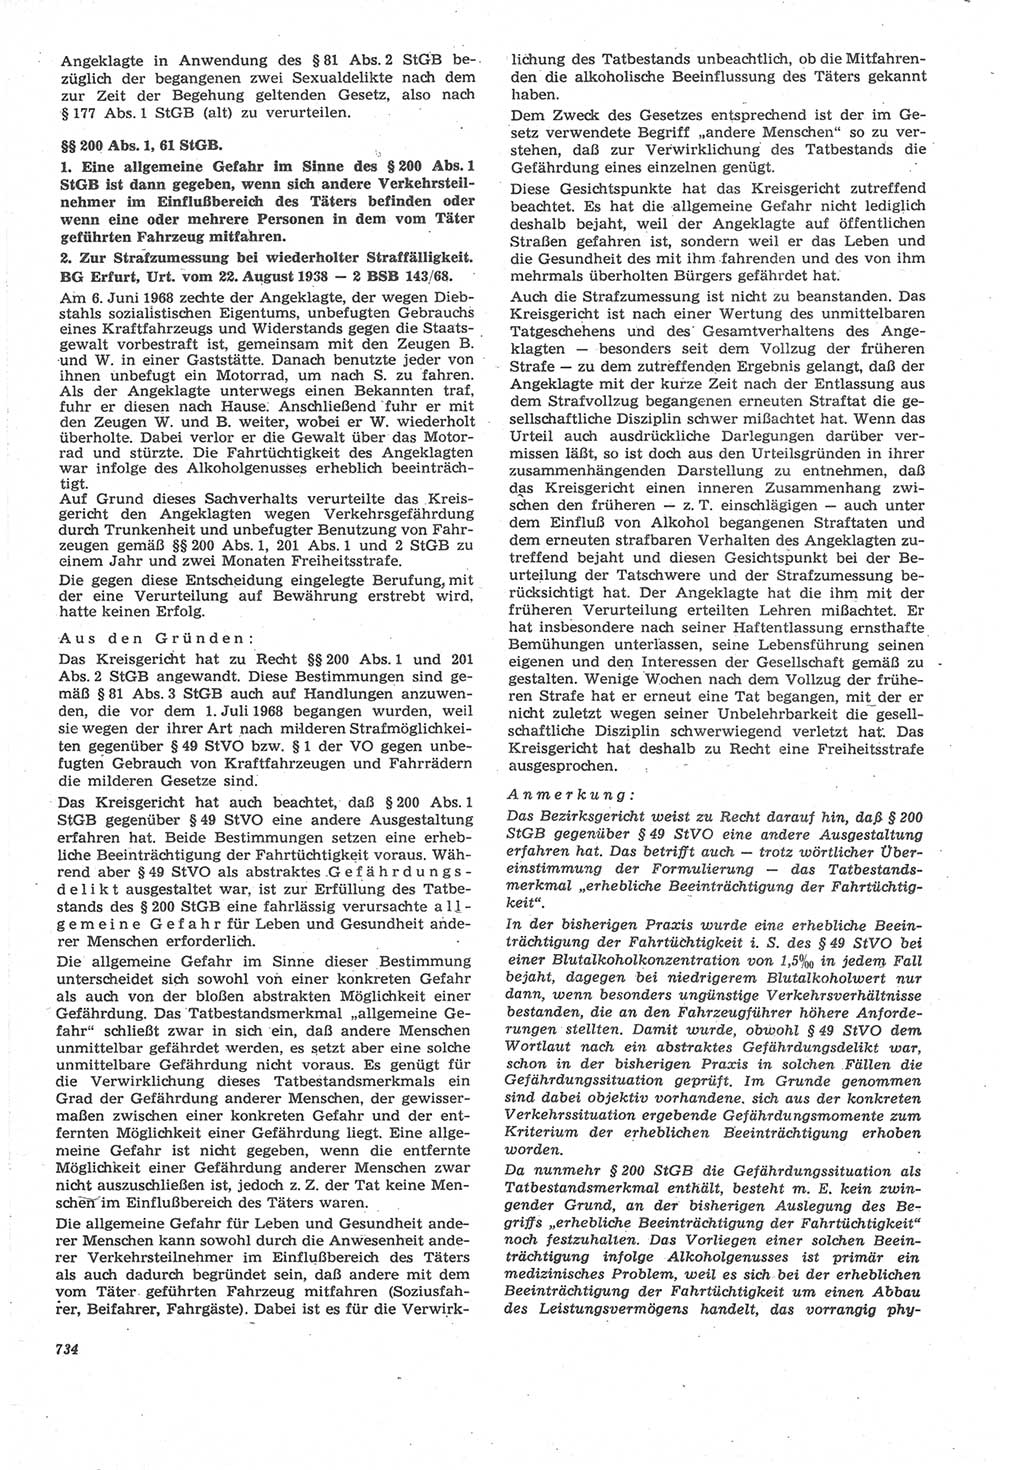 Neue Justiz (NJ), Zeitschrift für Recht und Rechtswissenschaft [Deutsche Demokratische Republik (DDR)], 22. Jahrgang 1968, Seite 734 (NJ DDR 1968, S. 734)